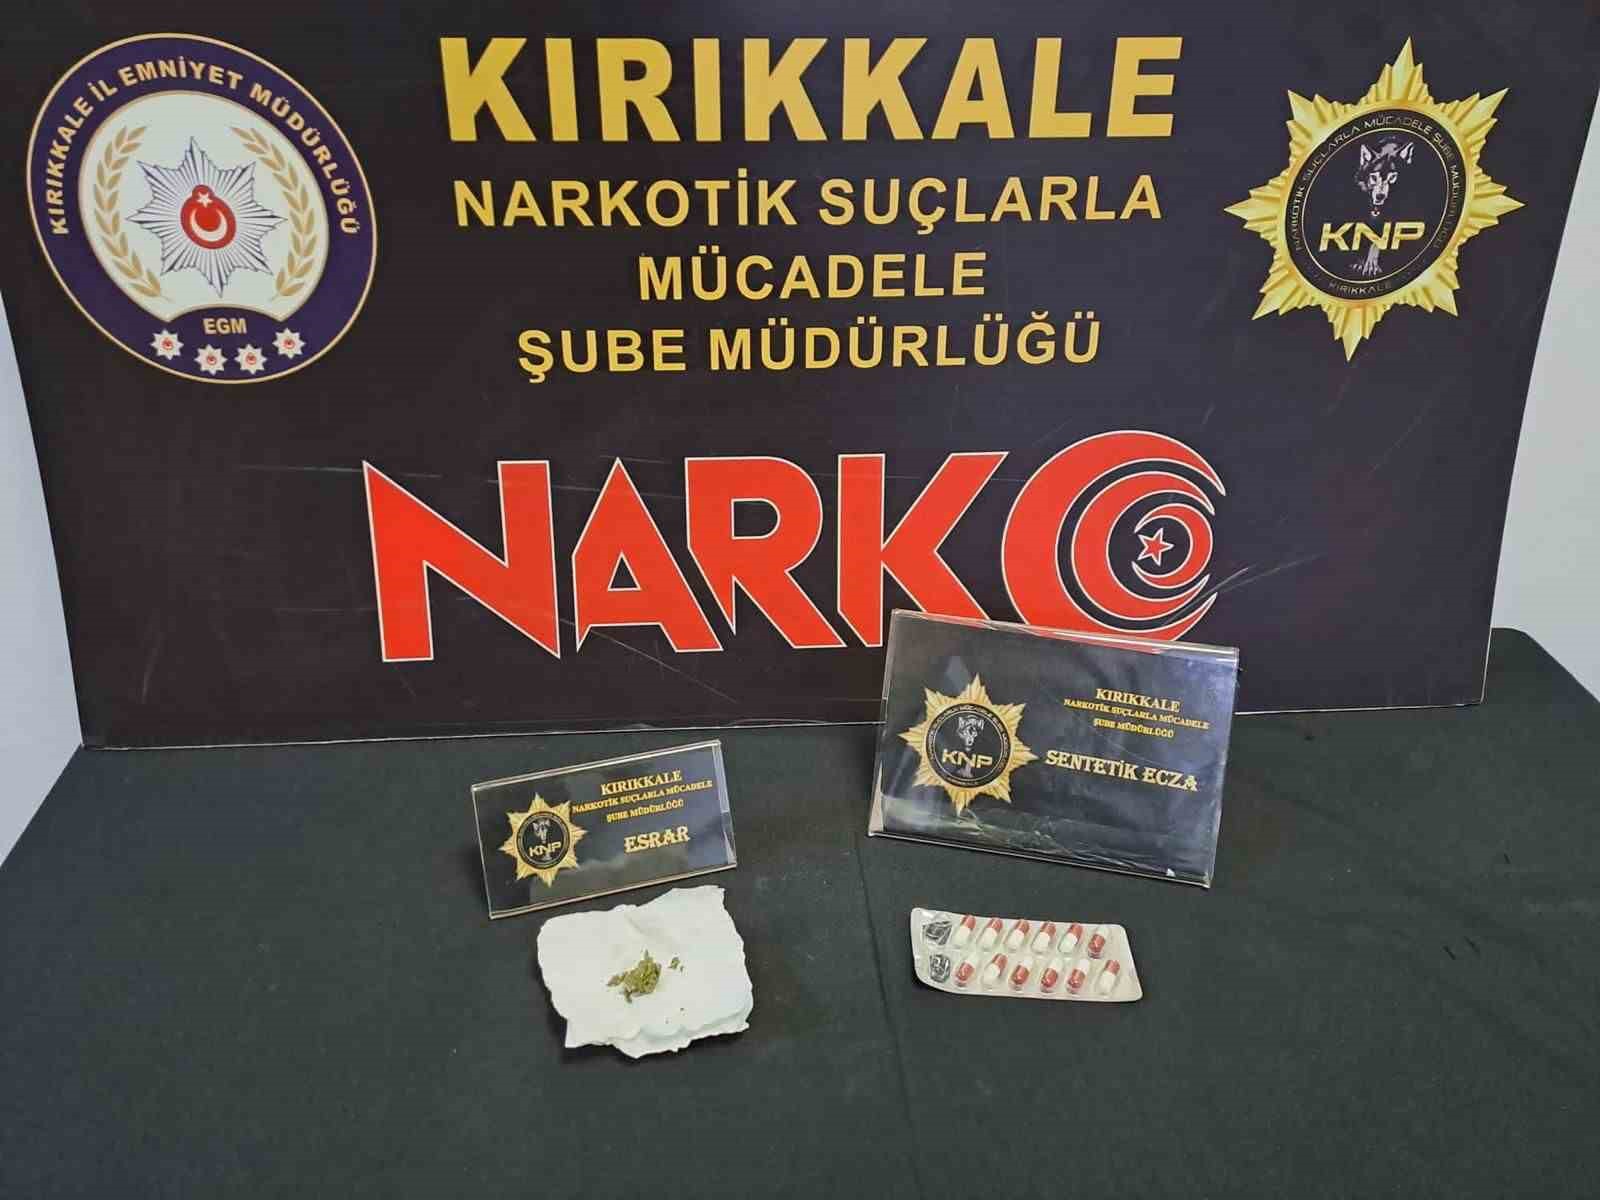 Kırıkkale’de uyuşturucu operasyonu: 1 tutuklama, 13 adli işlem